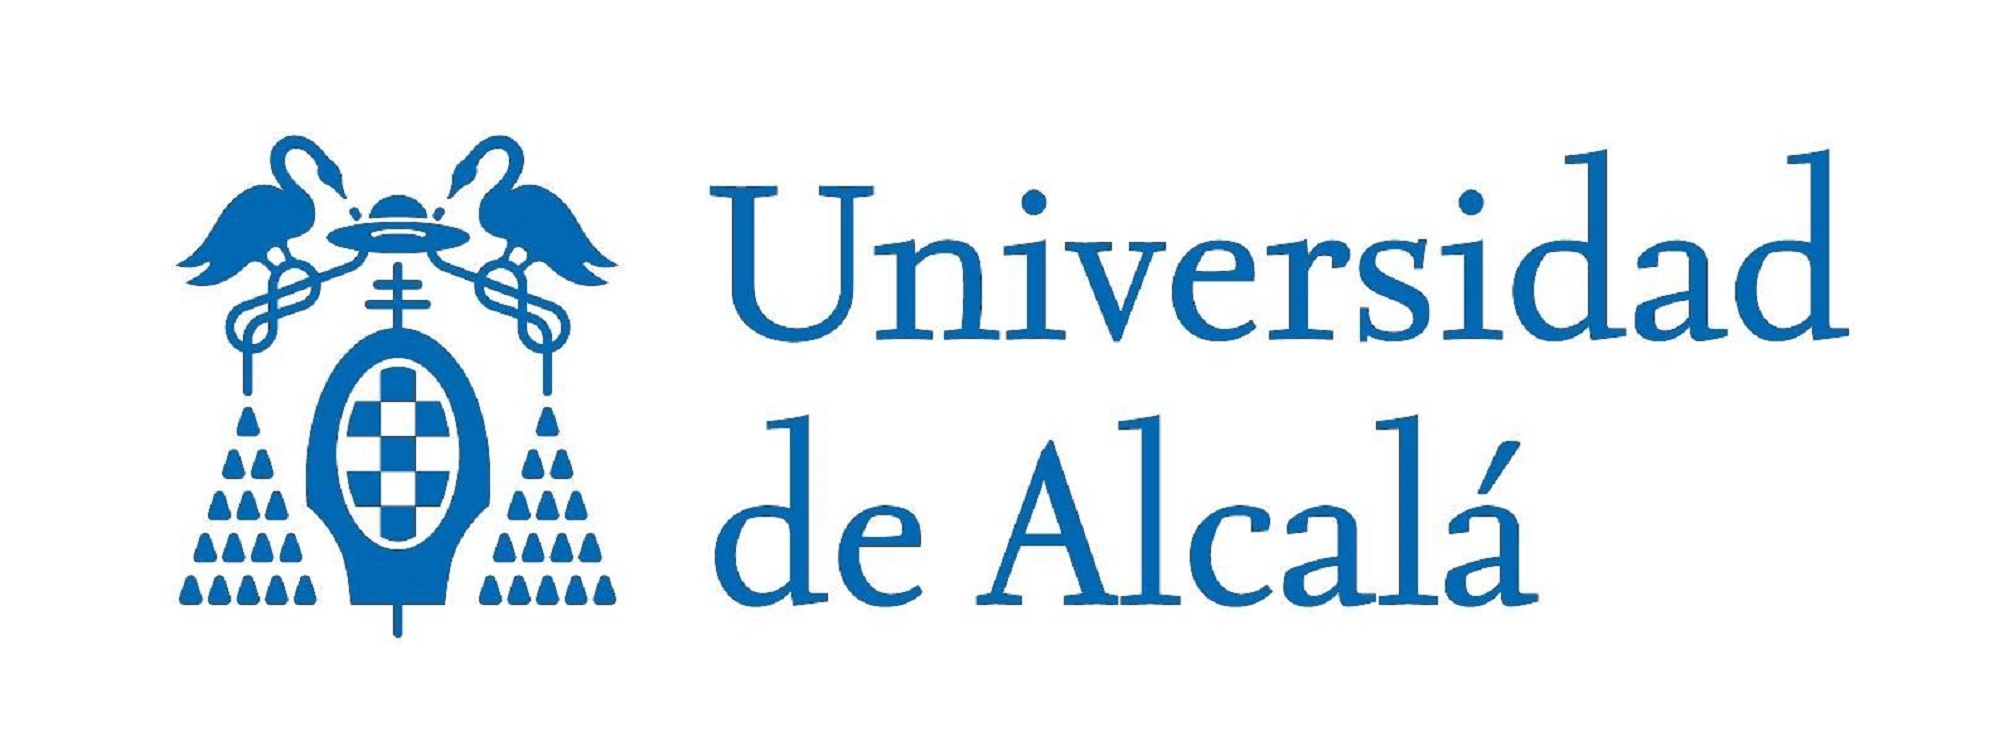 西班牙阿尔卡拉大学 logo